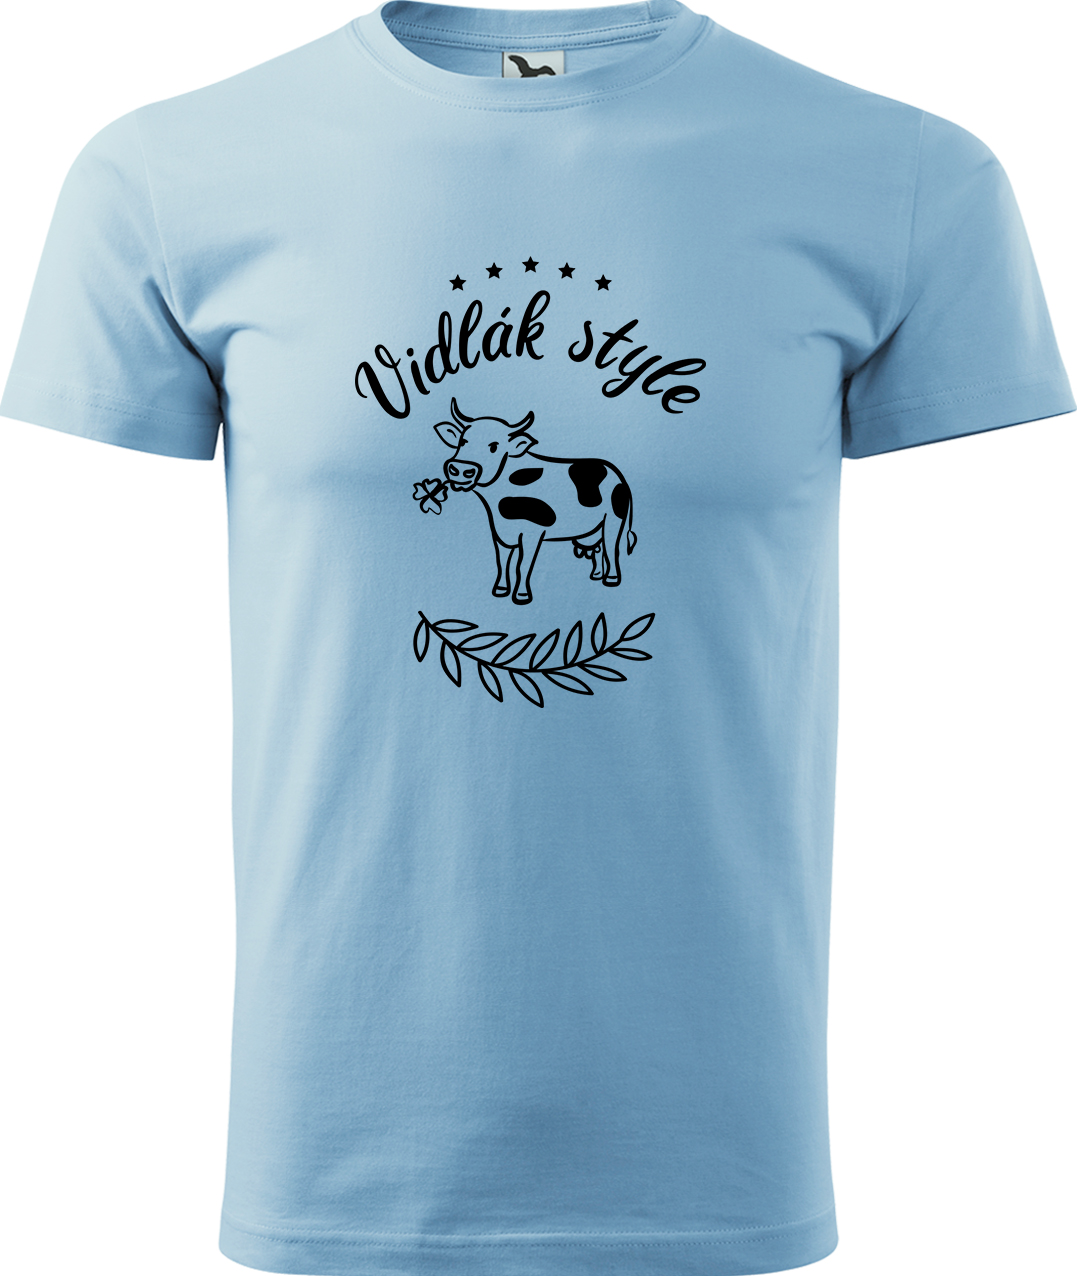 Pánské tričko s krávou - Vidlák style Velikost: M, Barva: Nebesky modrá (15), Střih: pánský